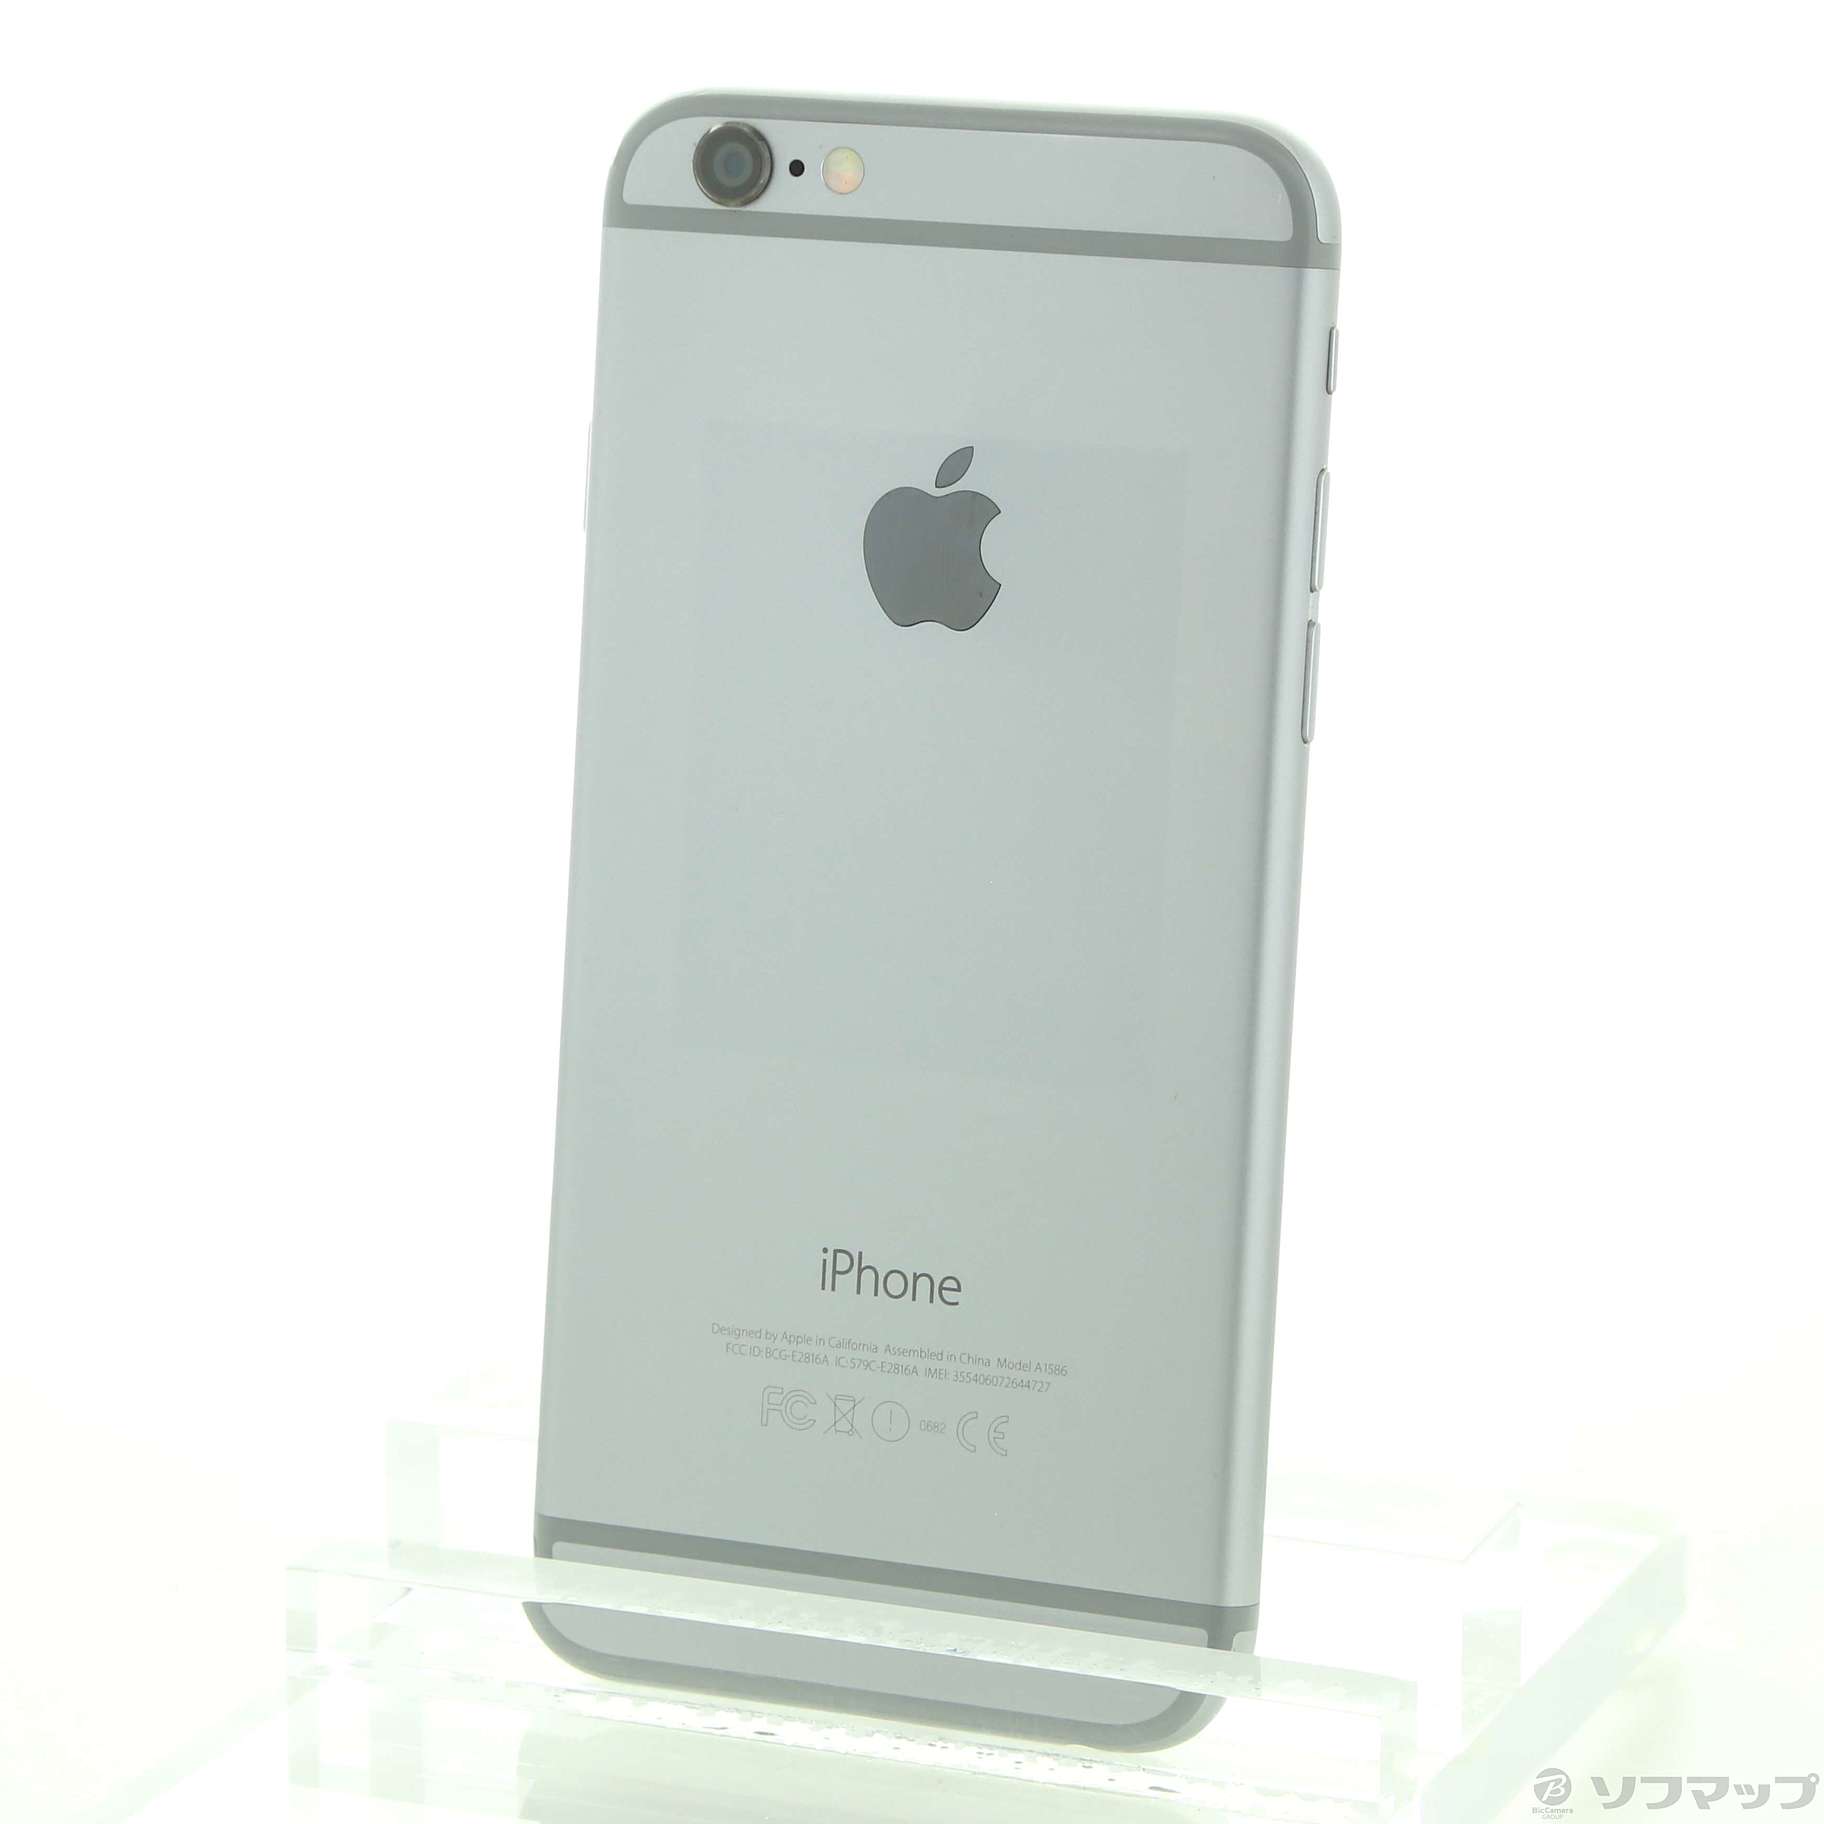 iPhone6 64GB - www.sorbillomenu.com